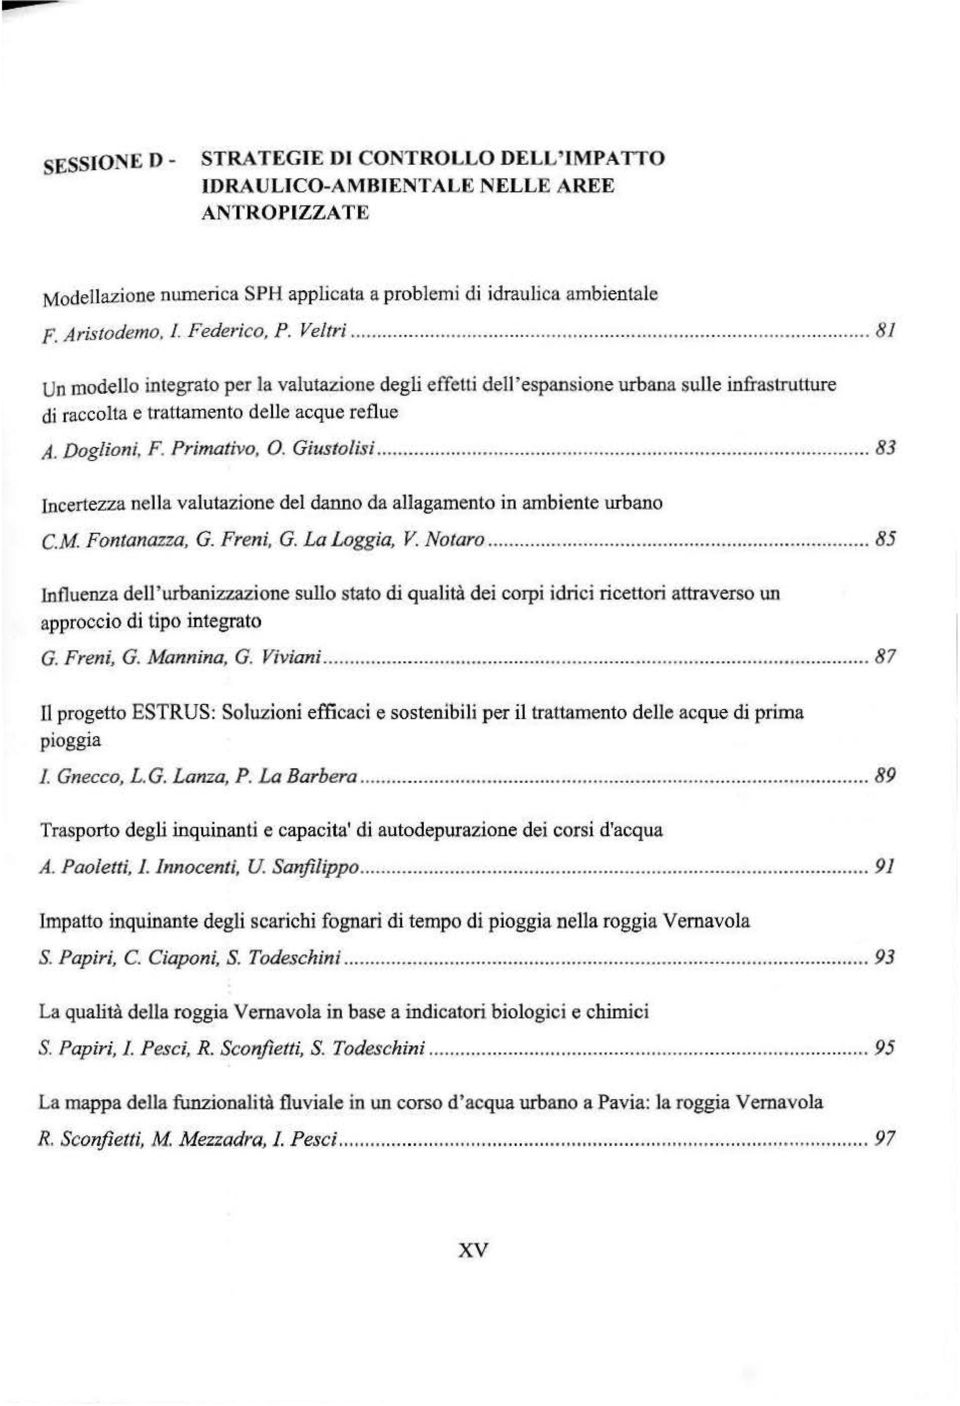 ..... 83 Incertezza nella valutazione del danno da allagamento in ambiente urbano C.M. Fontanazza, G. Freni, G. La Loggia, V Notaro.